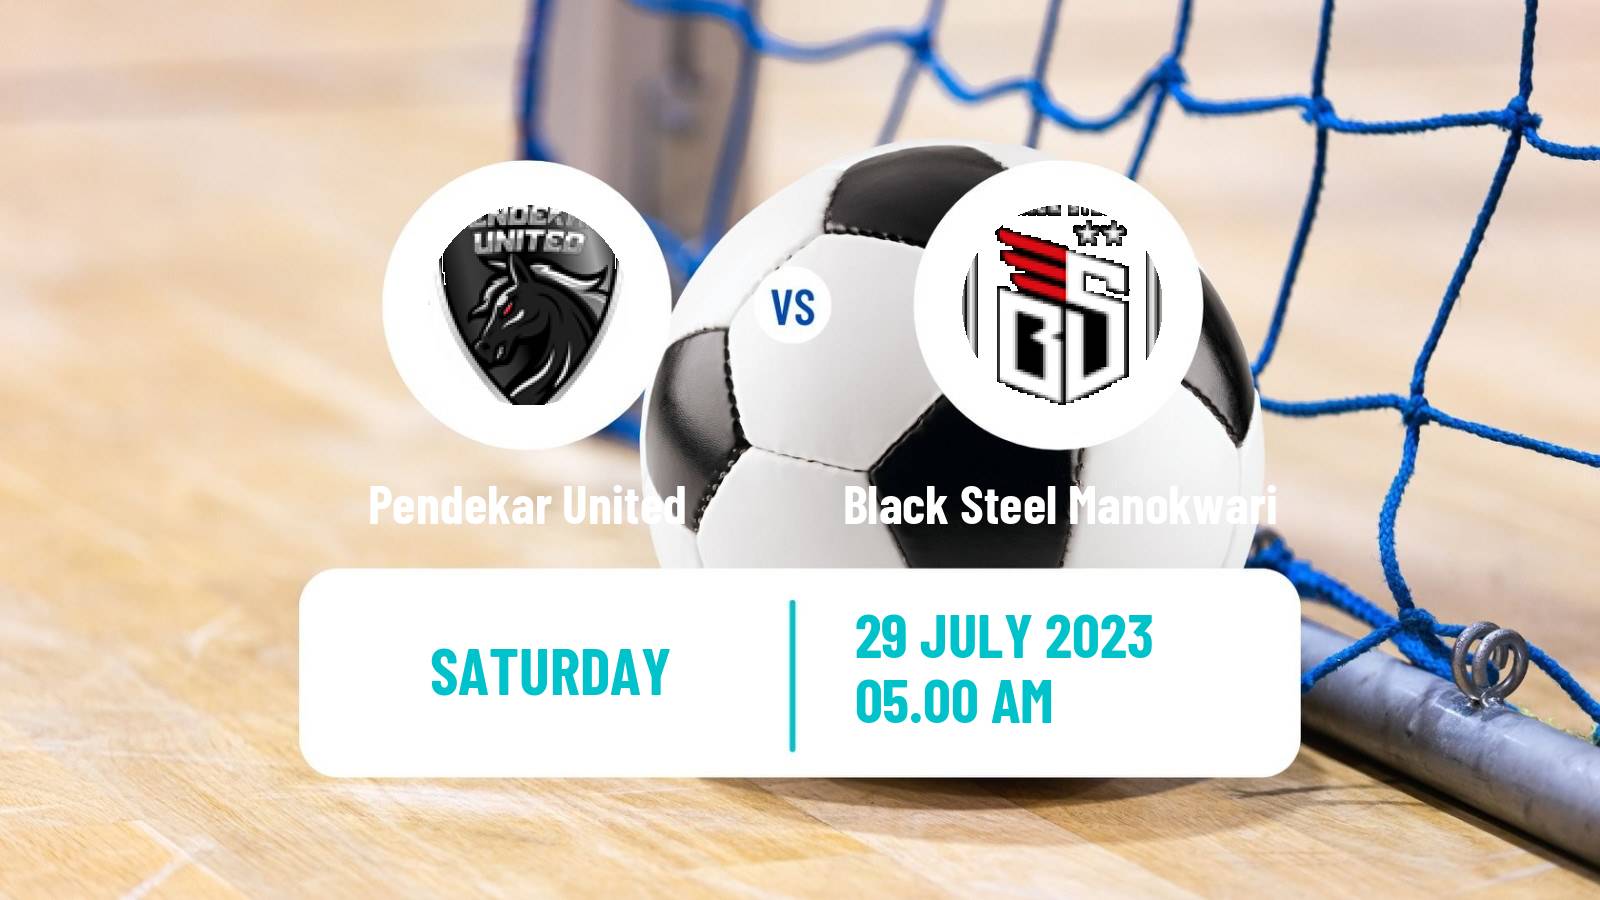 Futsal Indonesian Pro Futsal League Pendekar United - Black Steel Manokwari